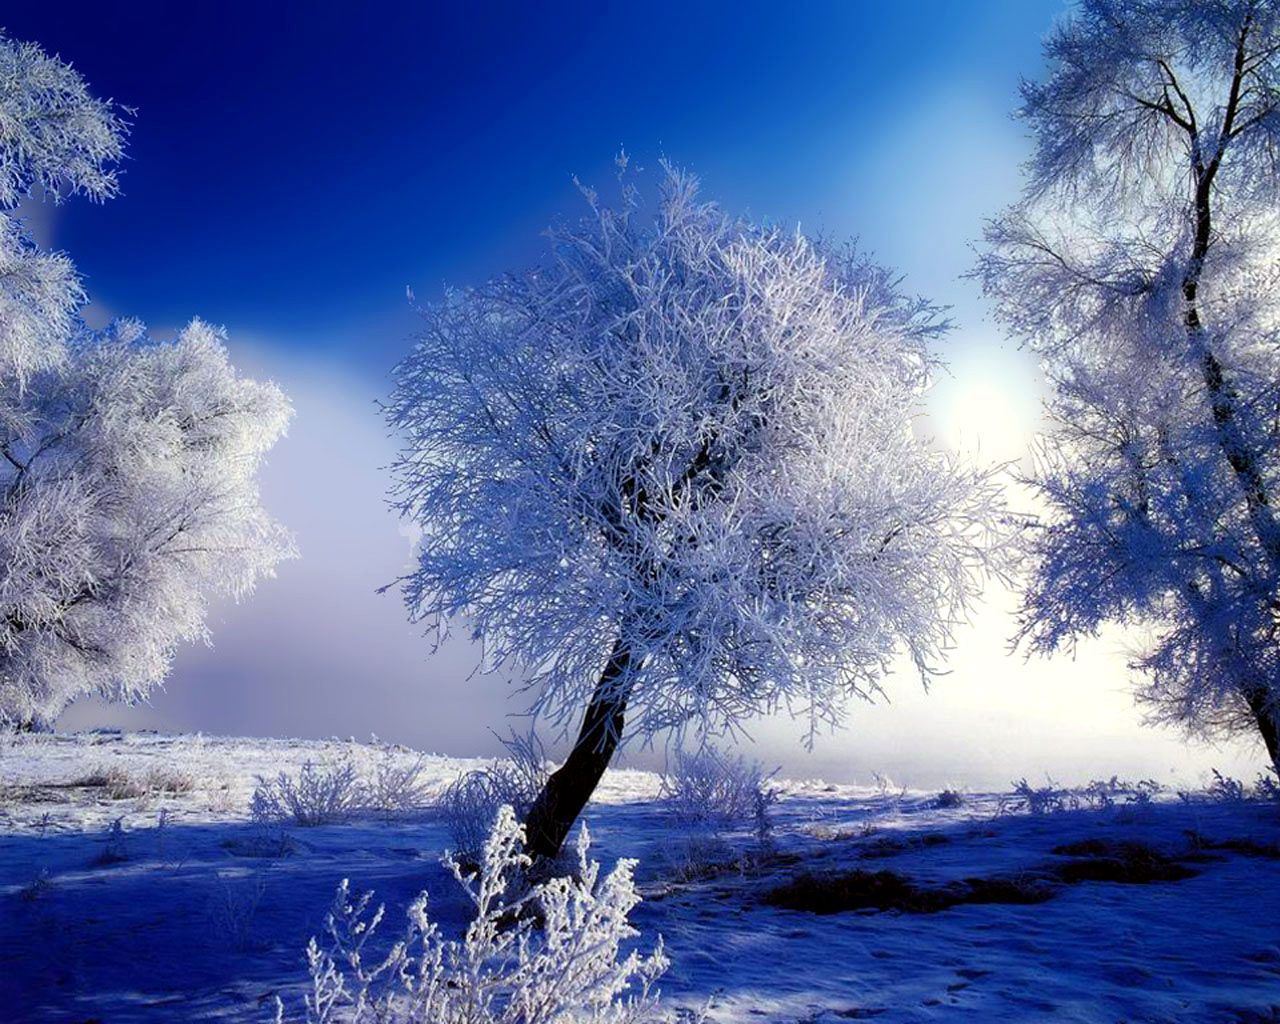 Snow Scenery HD Wallpaper | 1920x1080 | ID:56947